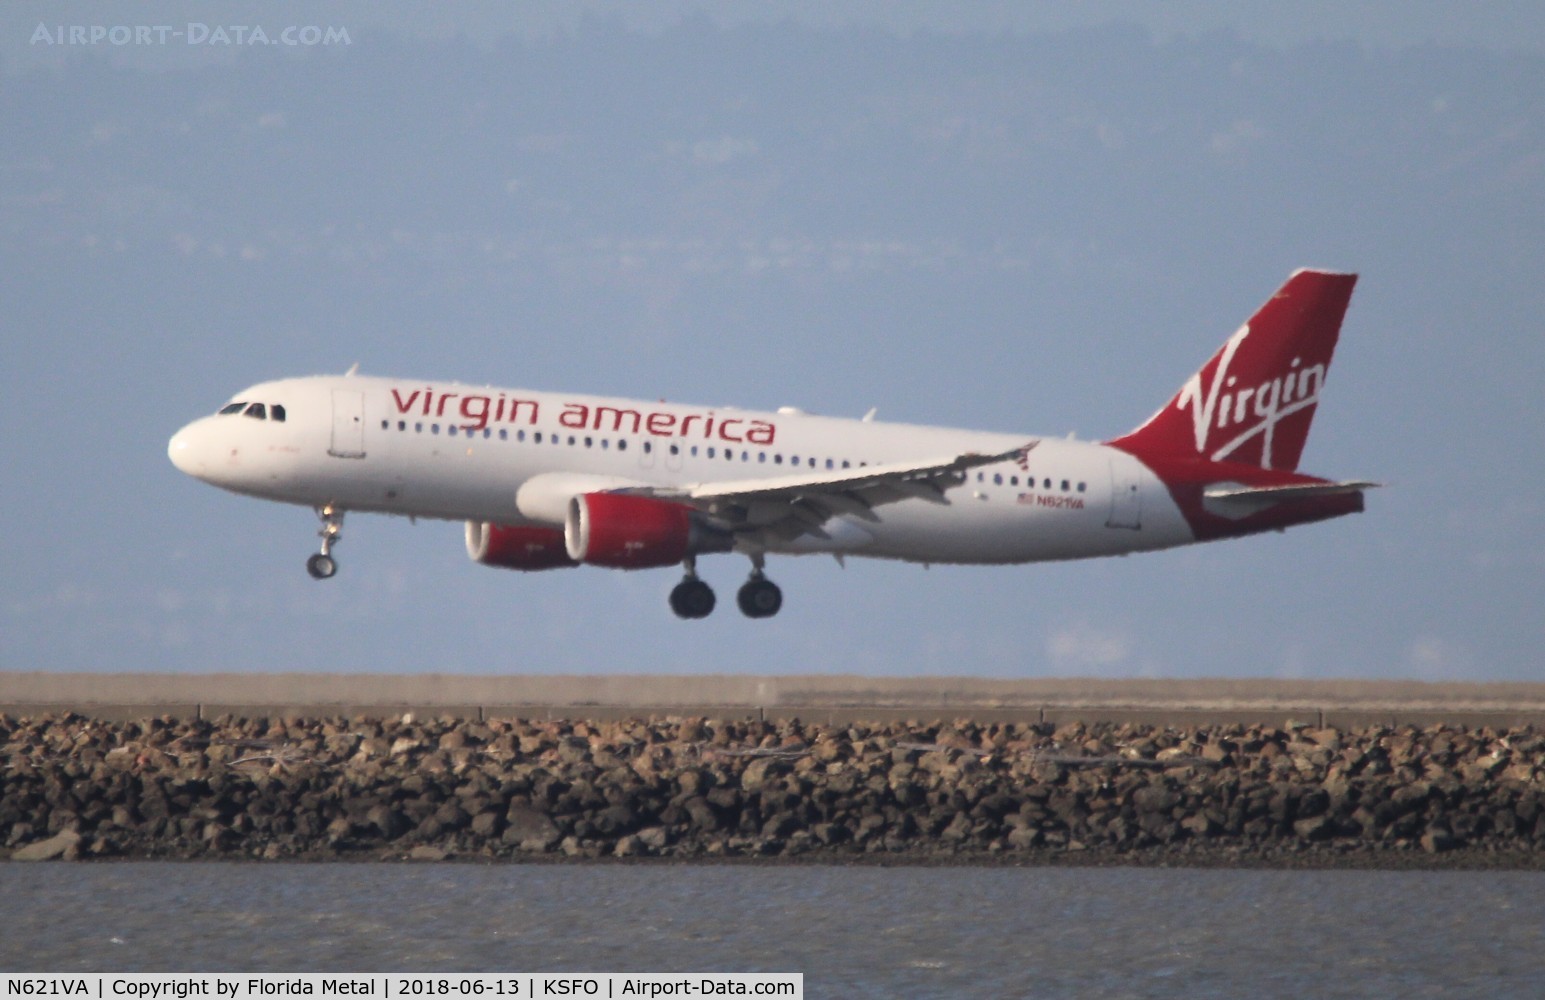 N621VA, 2005 Airbus A320-214 C/N 2616, Virgin America